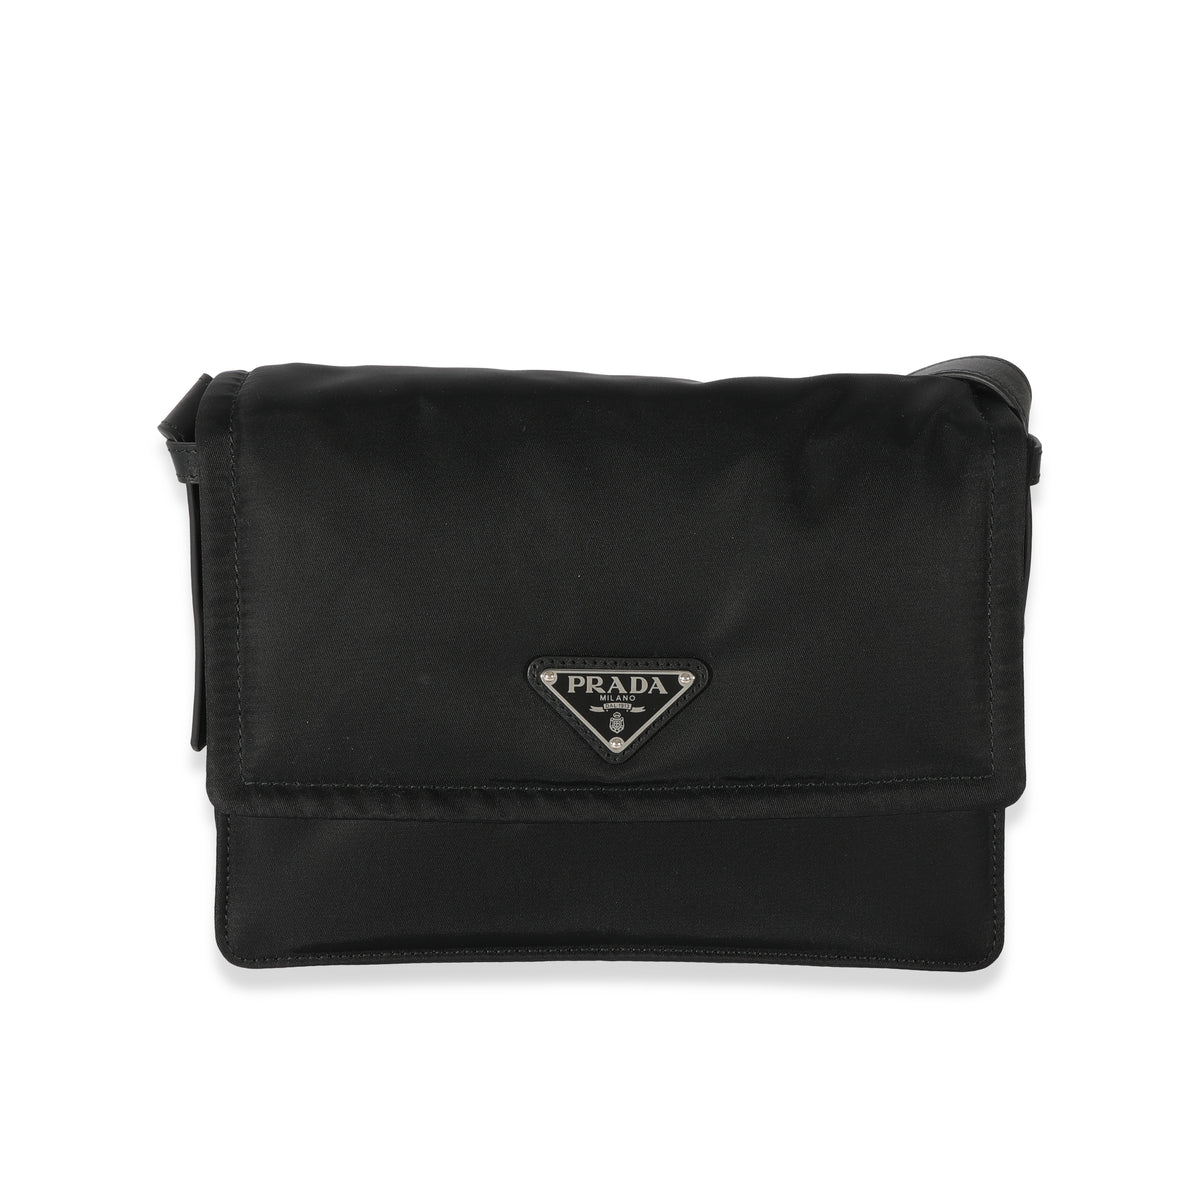 Prada Galleria Saffiano Small Leather Bag Black | Costco